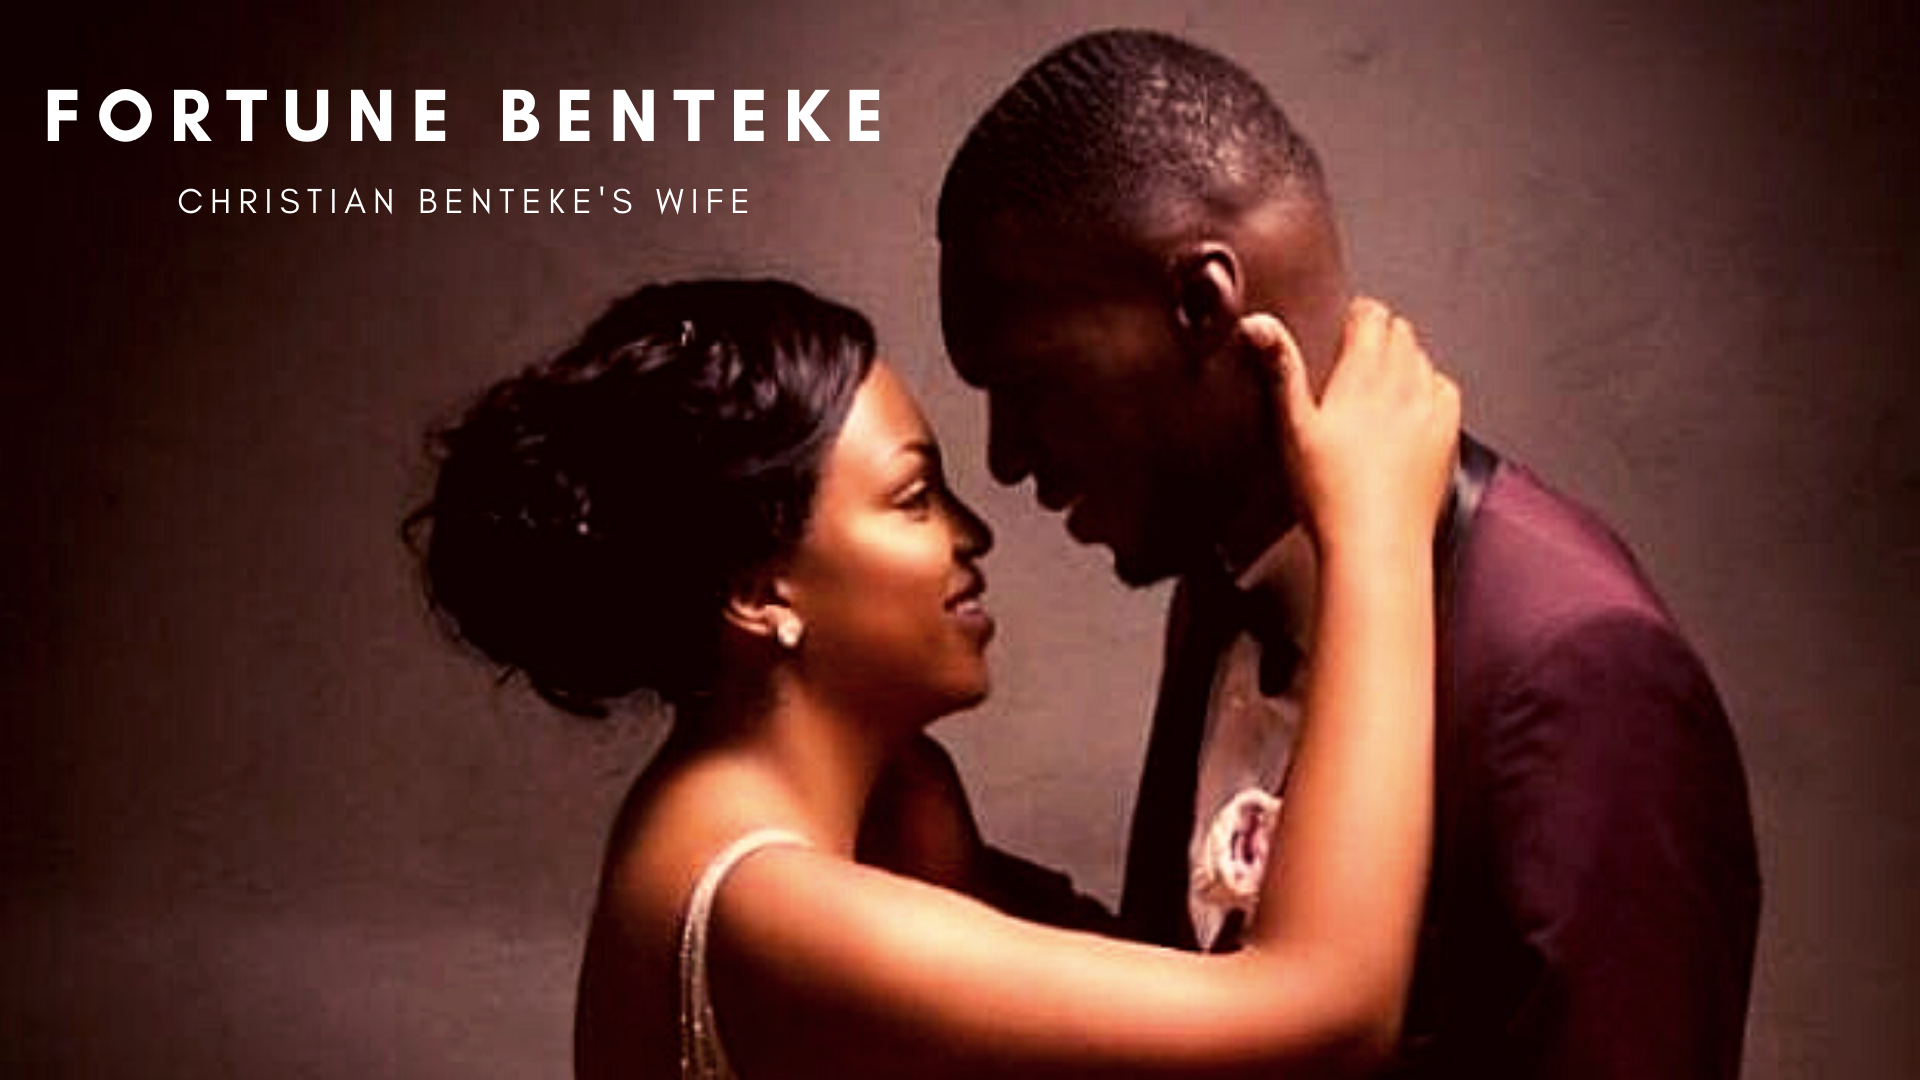 Christian Benteke with his wife Fortune Benteke. (Picture Credit: Christian Benteke Instagram)